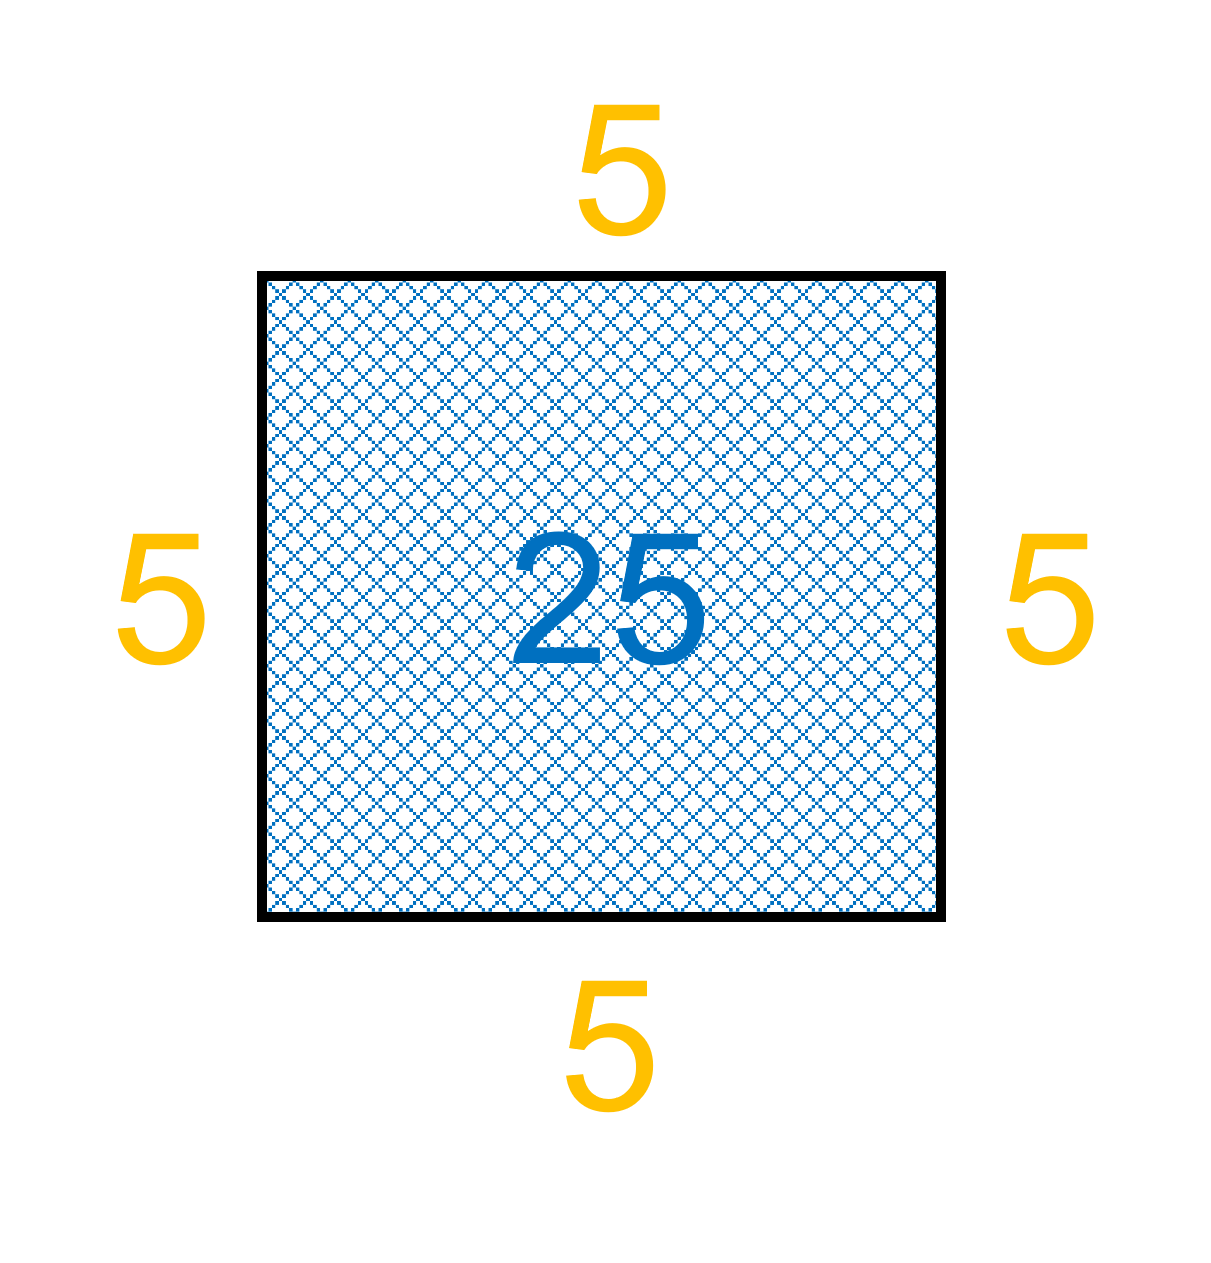 kvadrat med areal lik 25